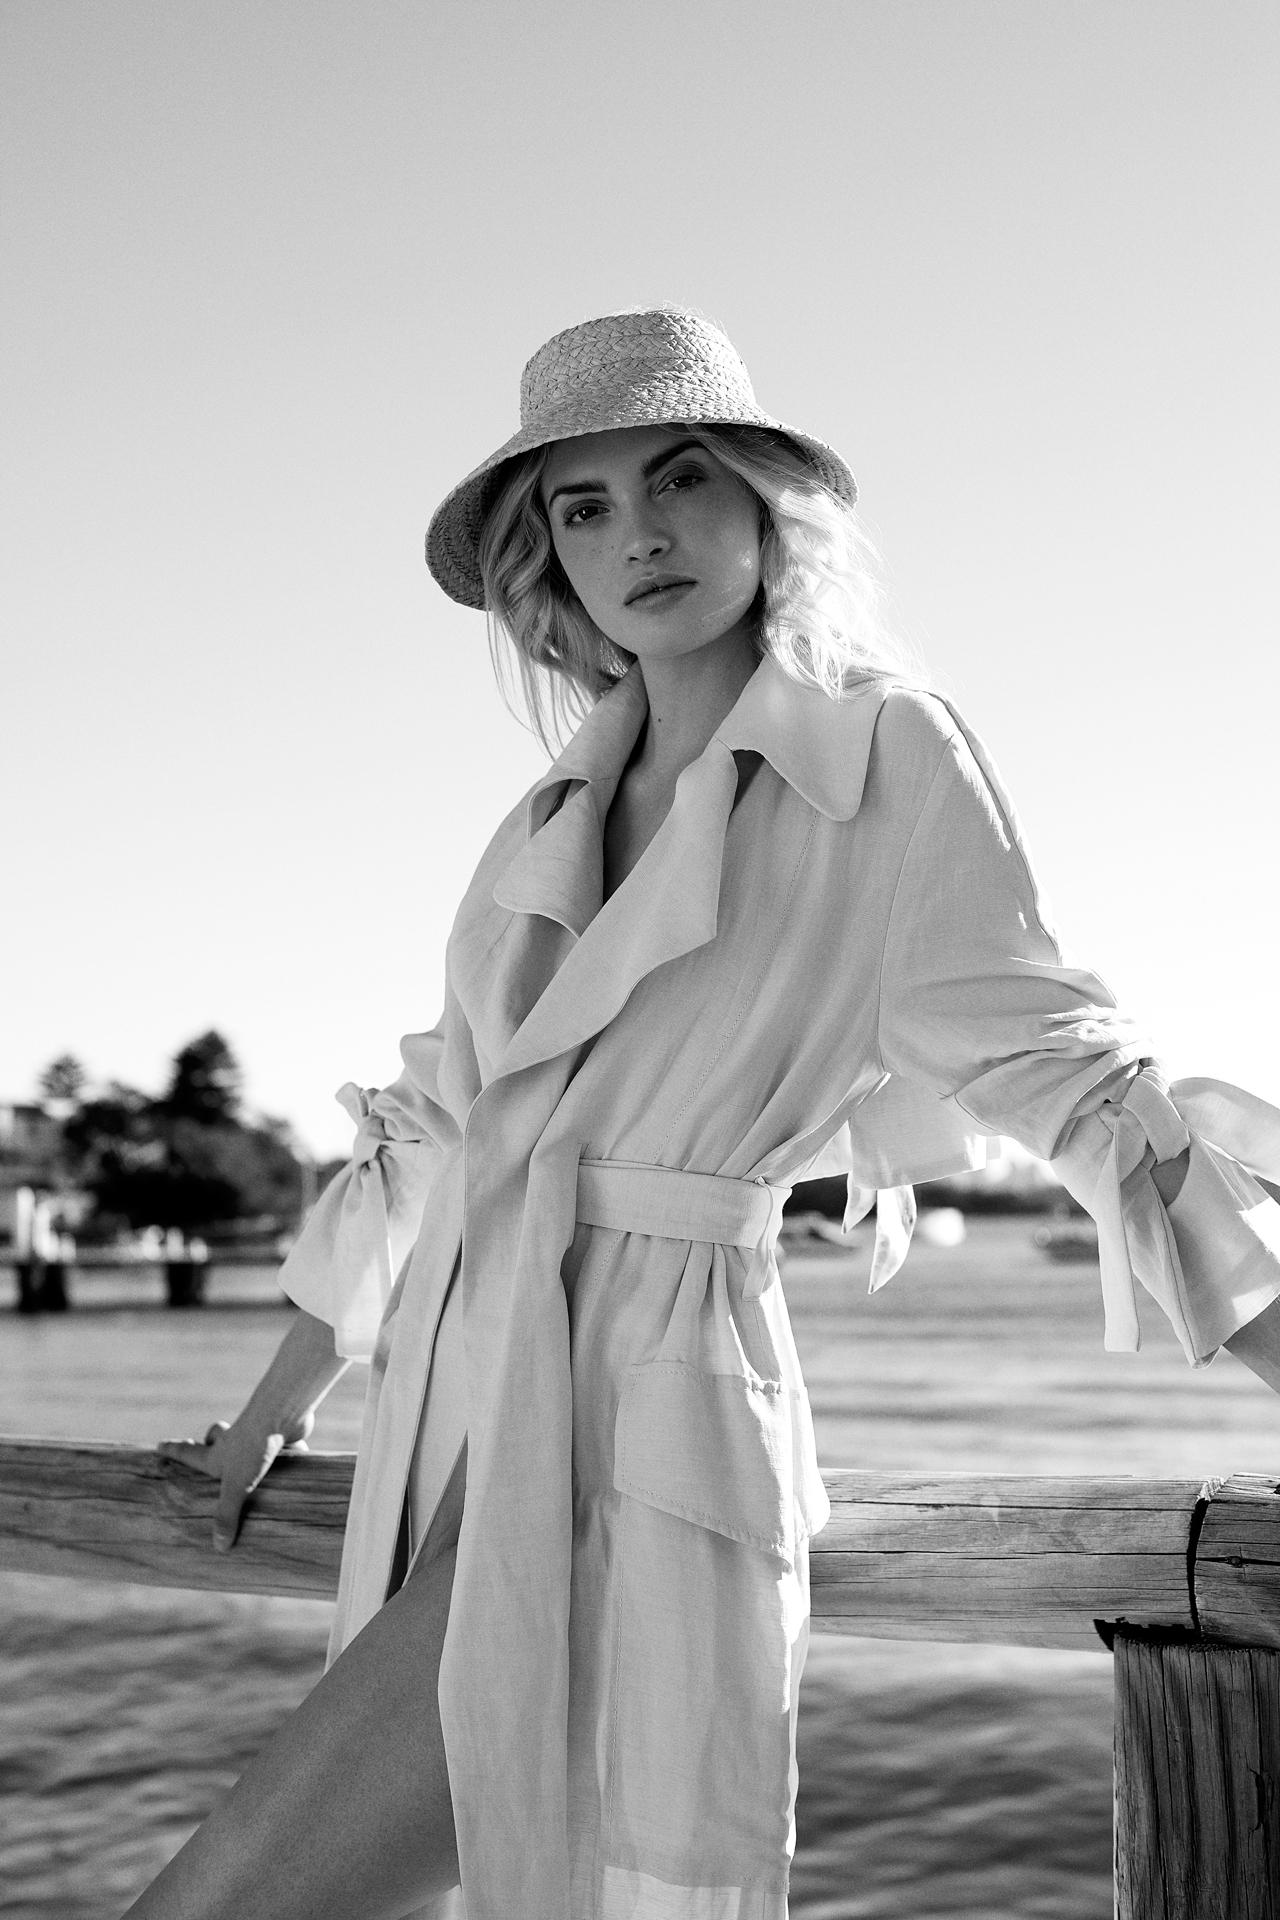 Hats off: milliner Helen Kaminski on 35 years of headwear - Vogue